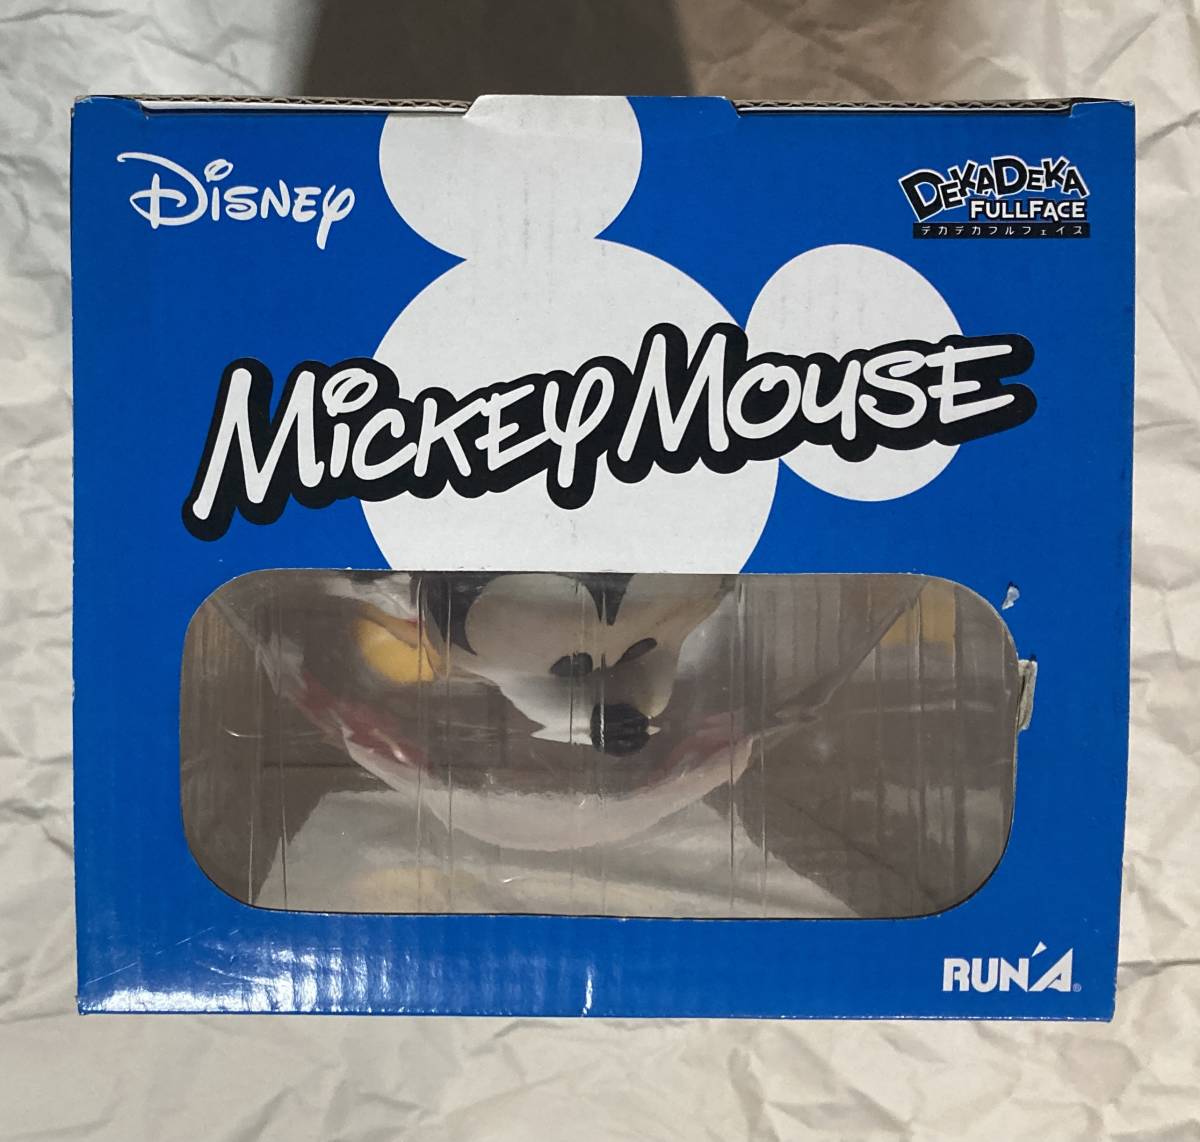 ミッキーマウス 「ディズニー」 デカデカフルフェイス 塗装済み完成品_画像4